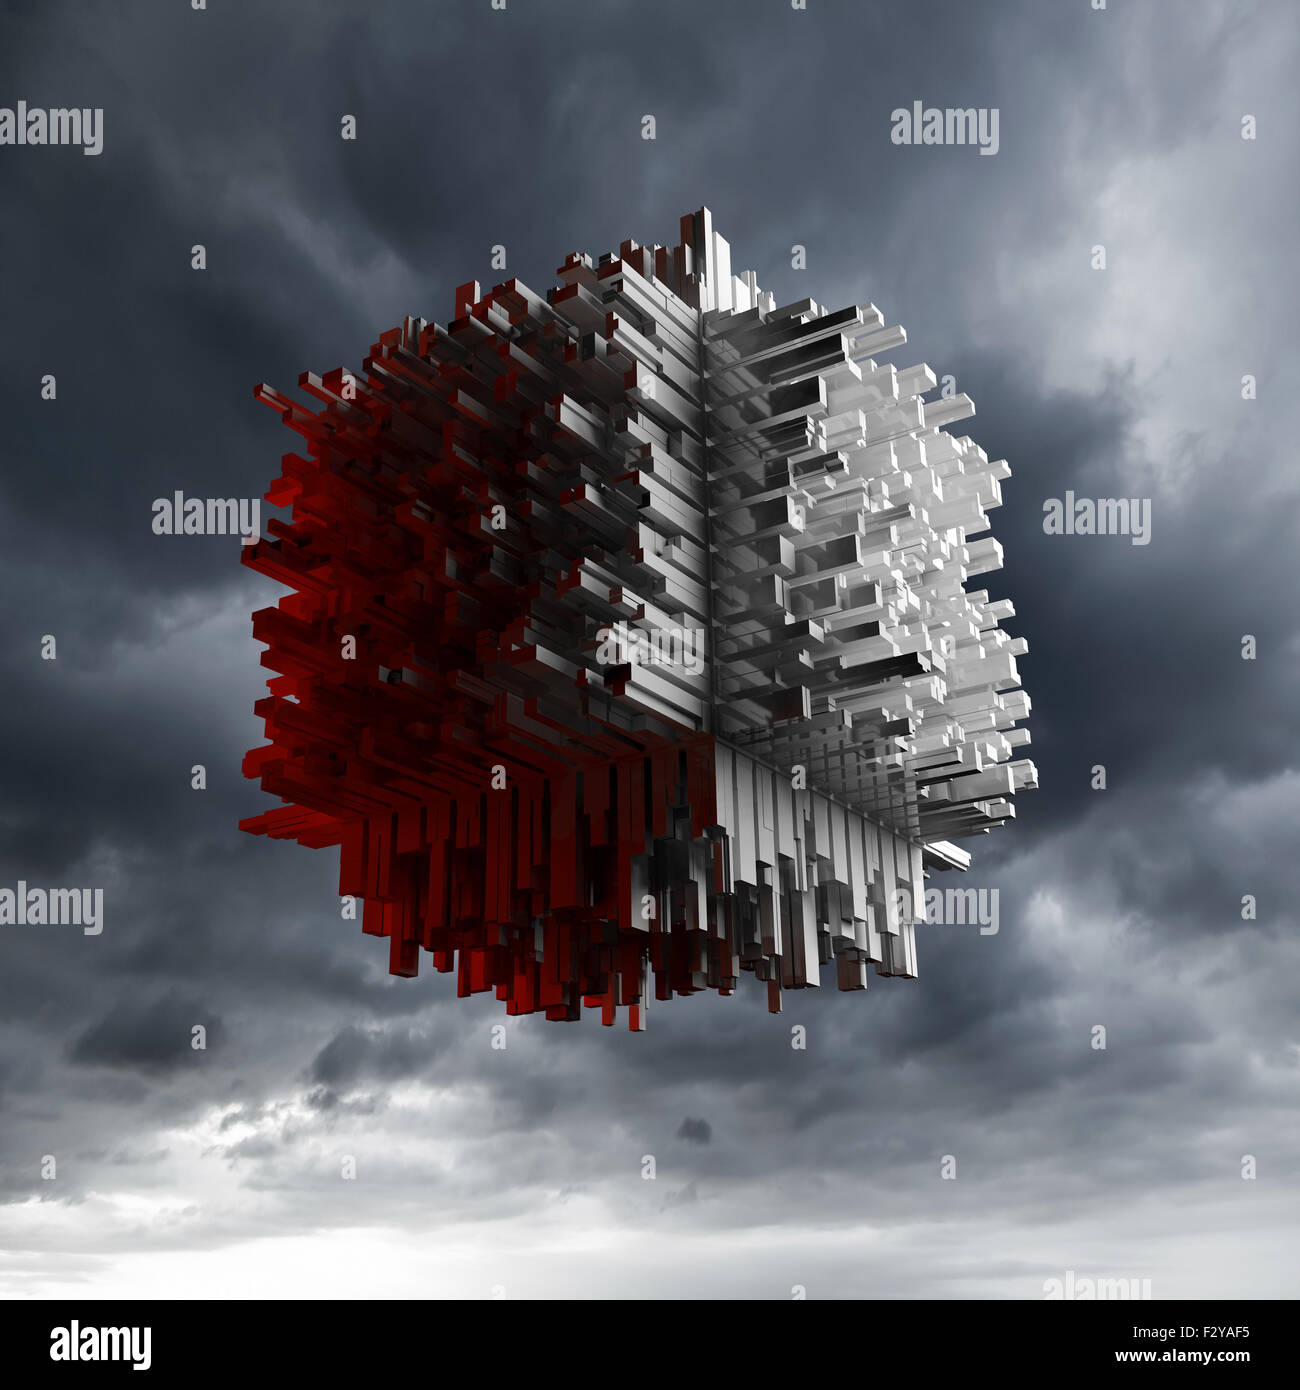 Abstrakte Cube Flugobjekt mit chaotischen extrudierte Fläche über dunkel bewölkter Himmel, 3d illustration Stockfoto